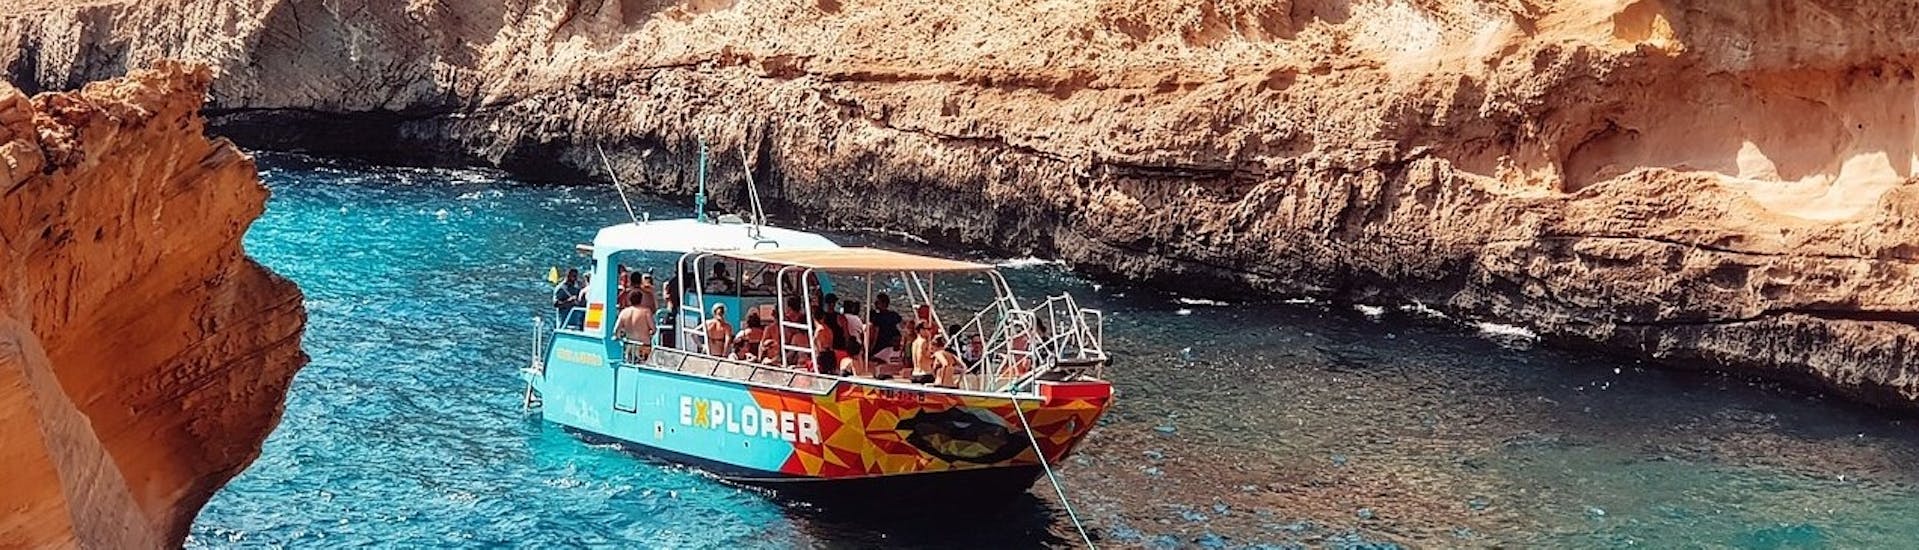 Boottocht van Palma de Mallorca met zwemmen & toeristische attracties.